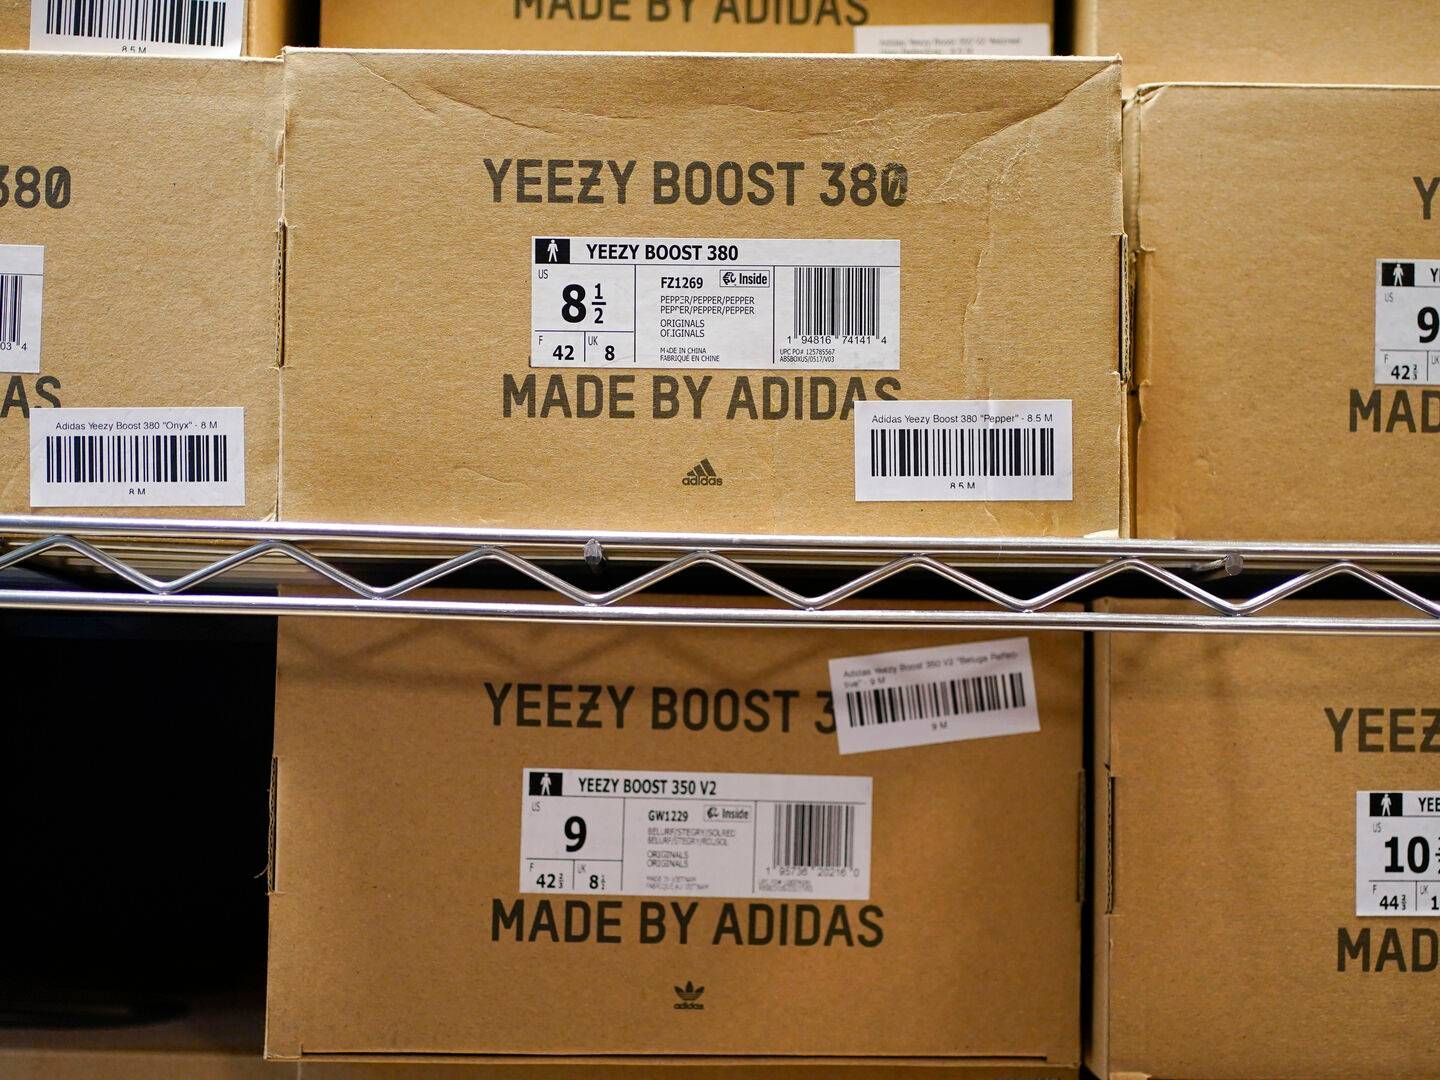 Ifølge Adidas havde lageret af Yeezy-sko, som de brændte inde med efter bruddet med Kanye West, senere Ye, en samlet værdi af omkring 9 mia. kr.